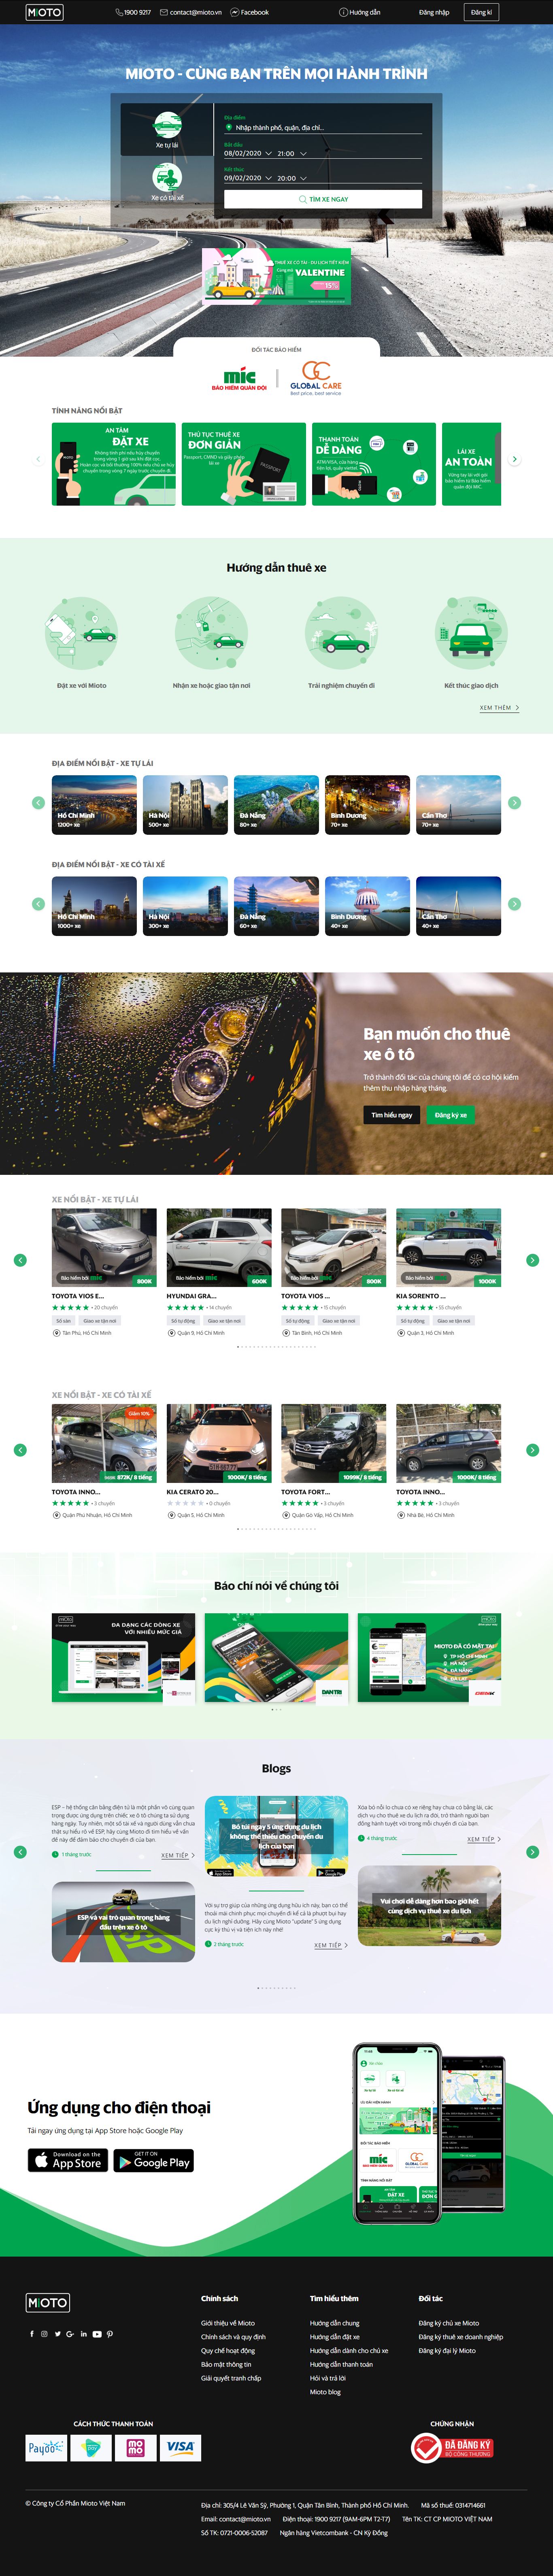 Thiết kế Website cho thuê xe - www.mioto.vn